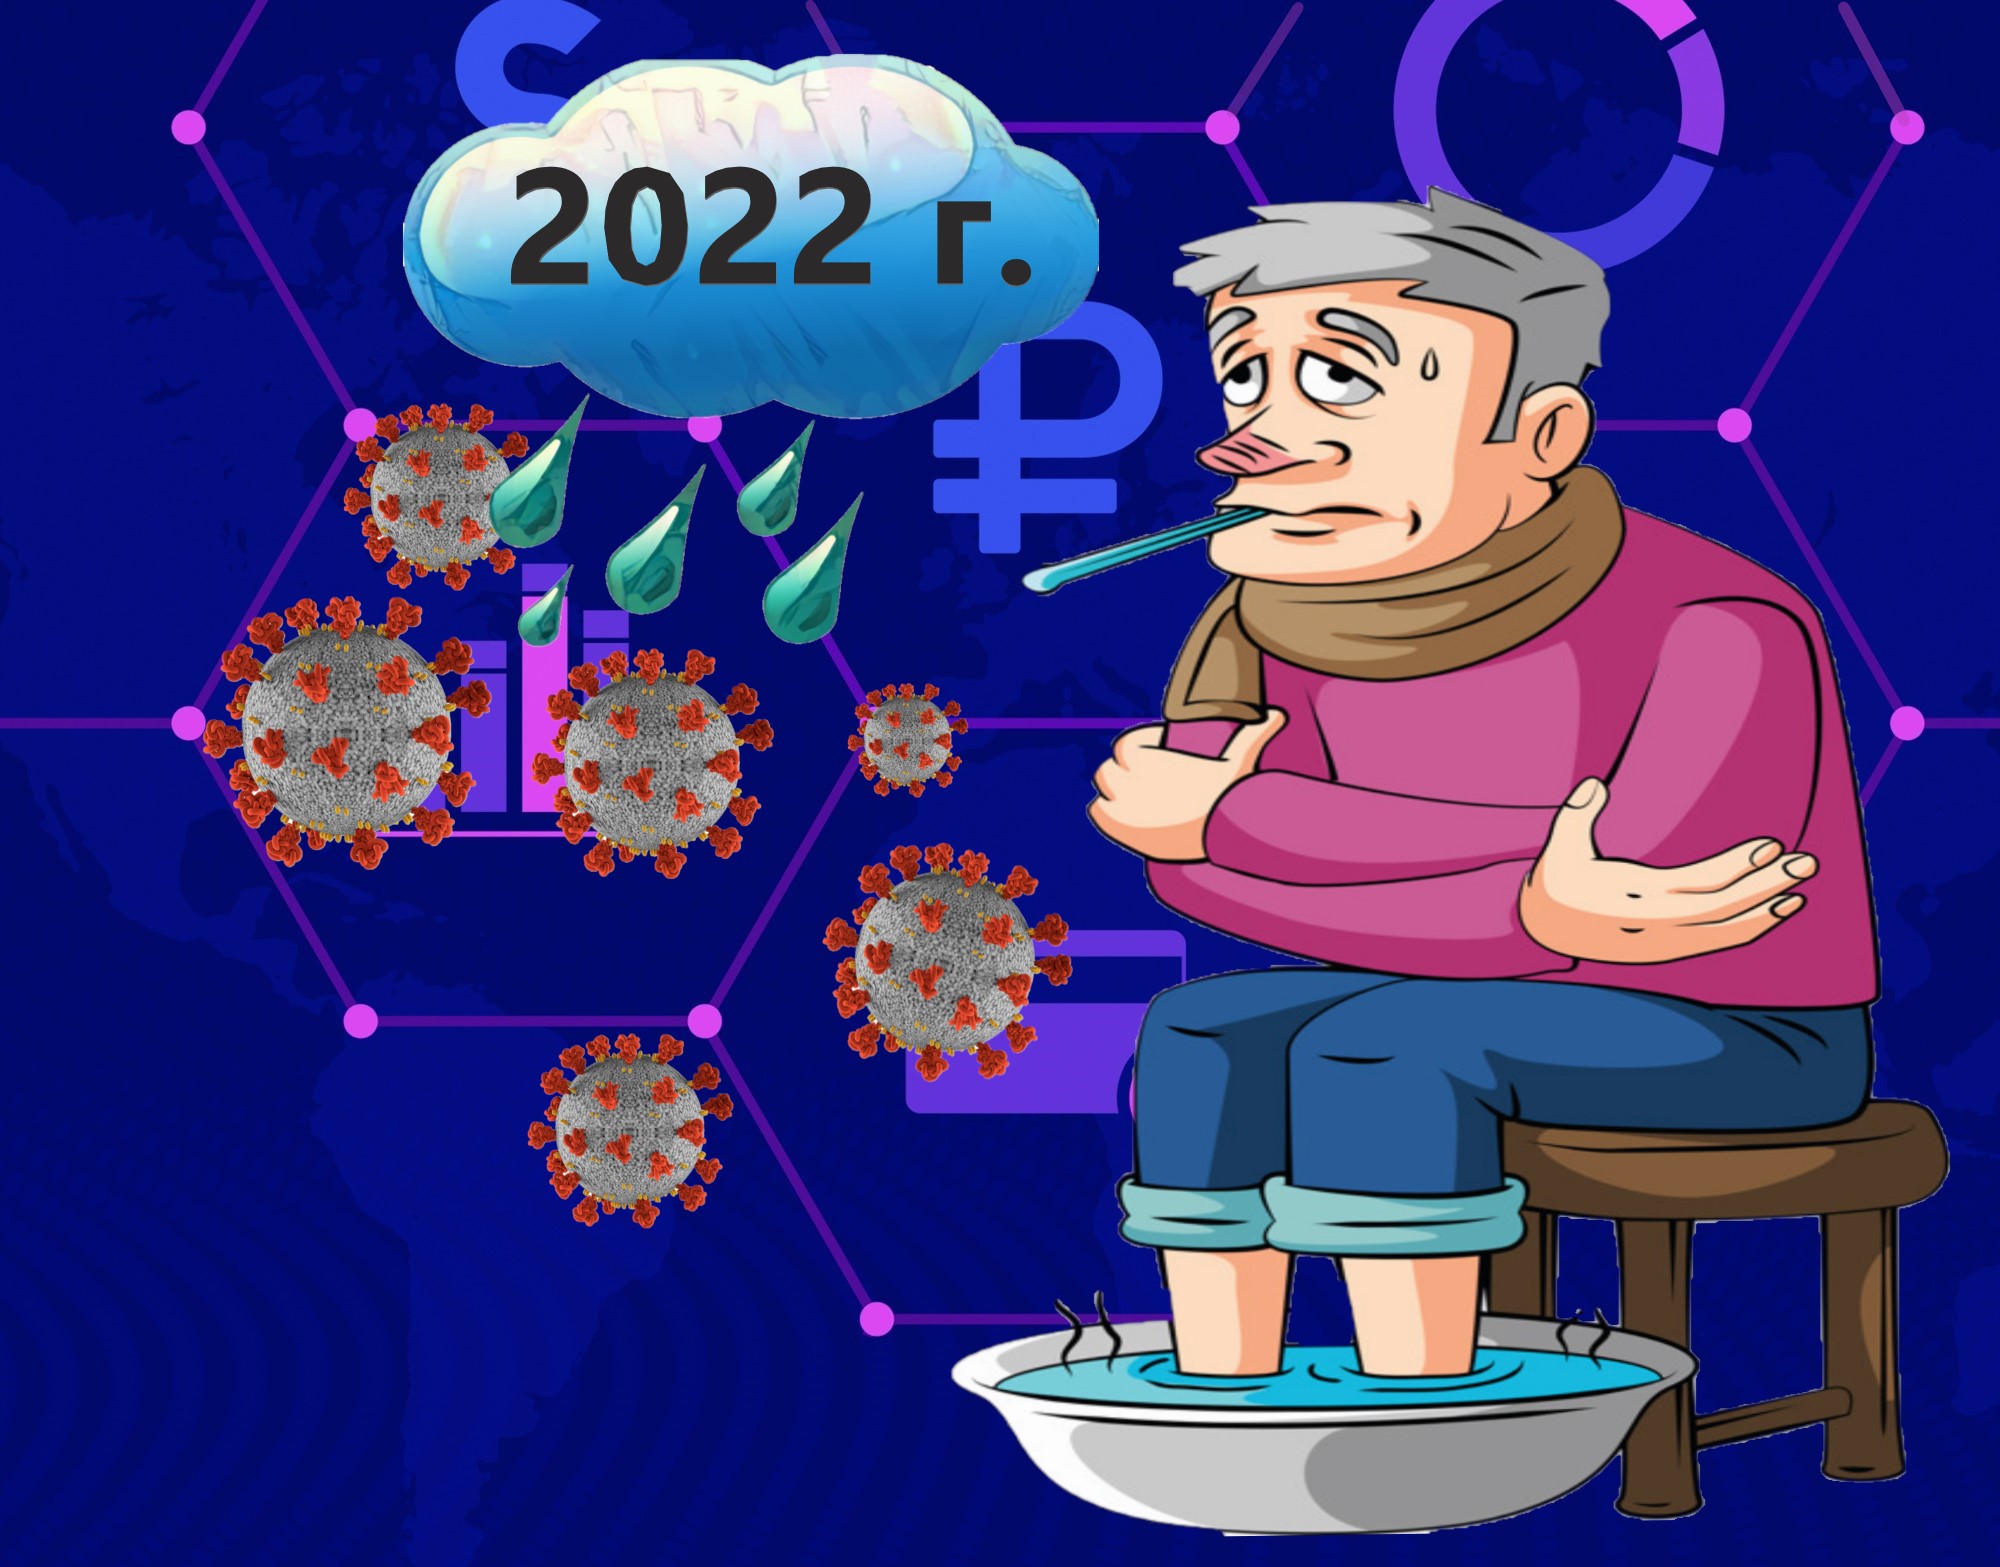 C 2022 годом. 2022 Год. 2022 Год в картинках с юмором. Артмастерс 2022. 2021 2022 Картинка с людьми.